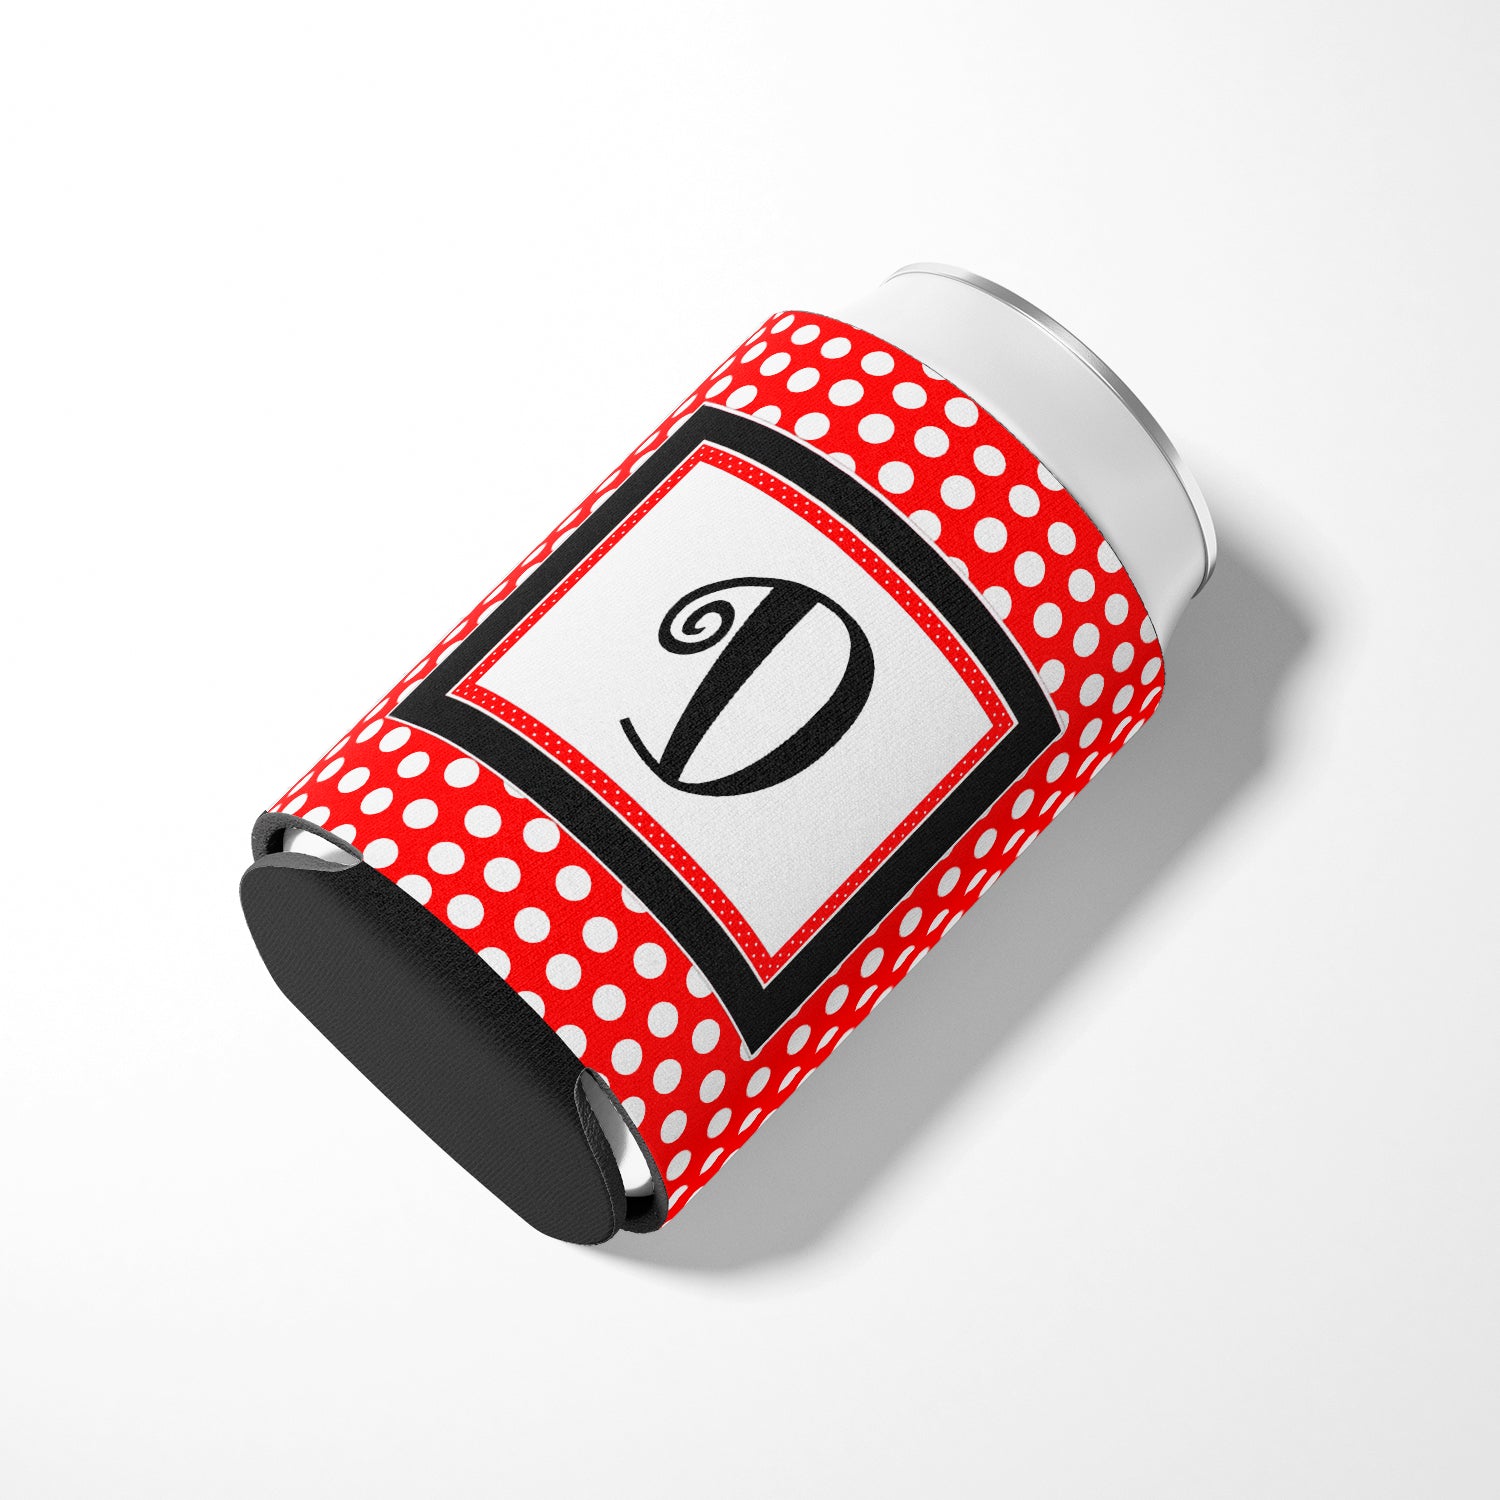 Letter D Initial Monogram - Red Black Polka Dots Can or Bottle Beverage Insulator Hugger